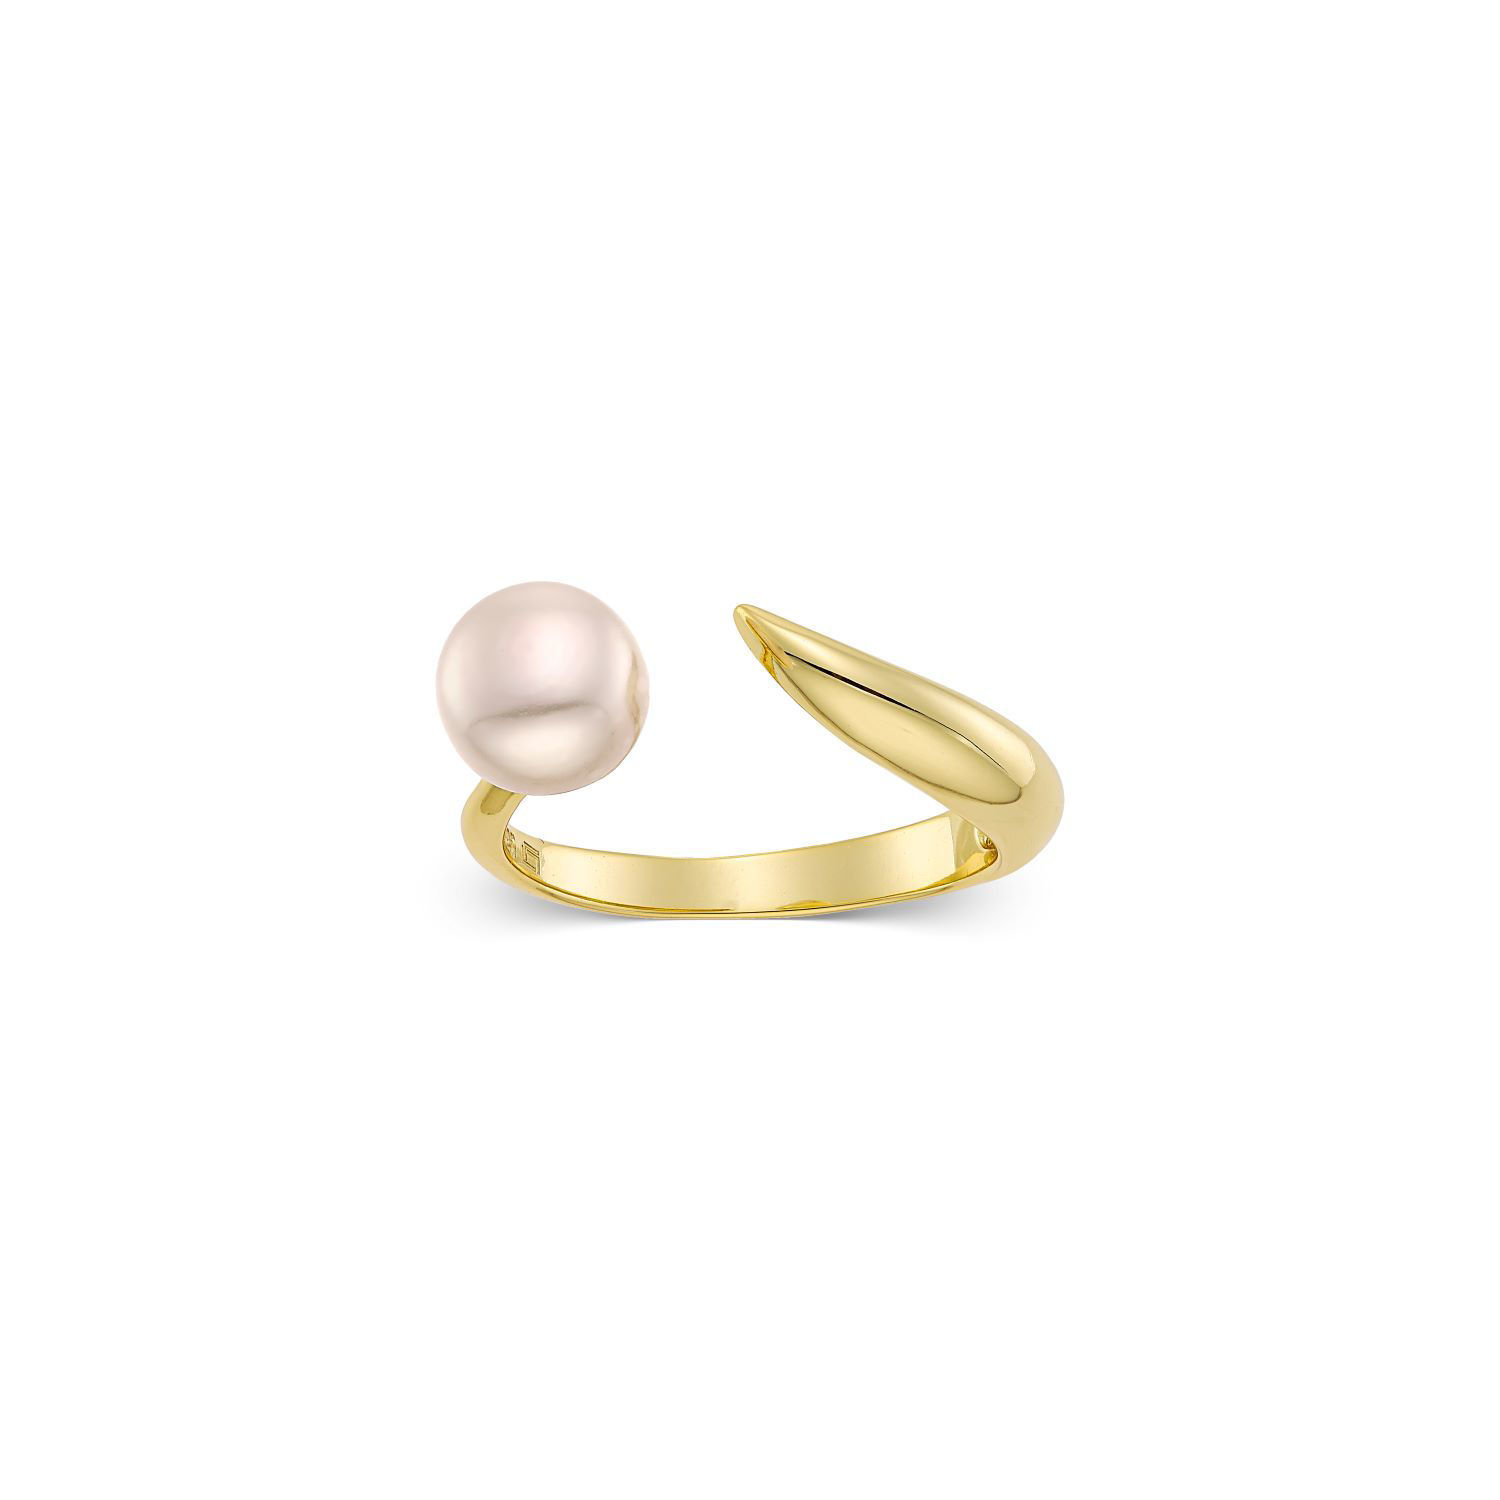 Δαχτυλίδι Pearls από επιχρυσωμένο ασήμι 925° με freshwater pearl